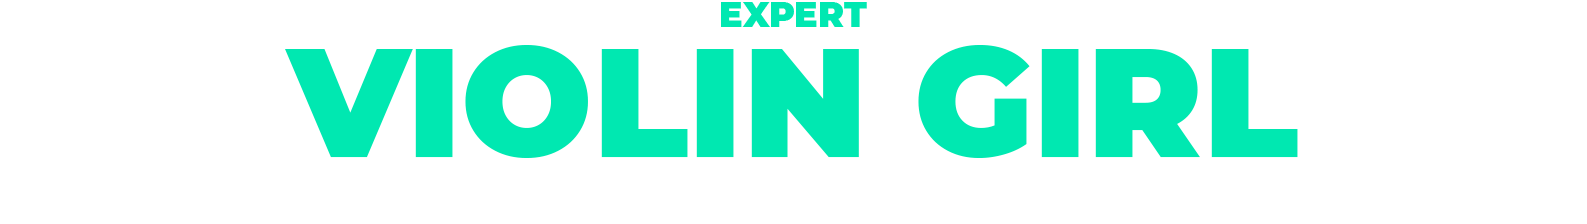 06 expert